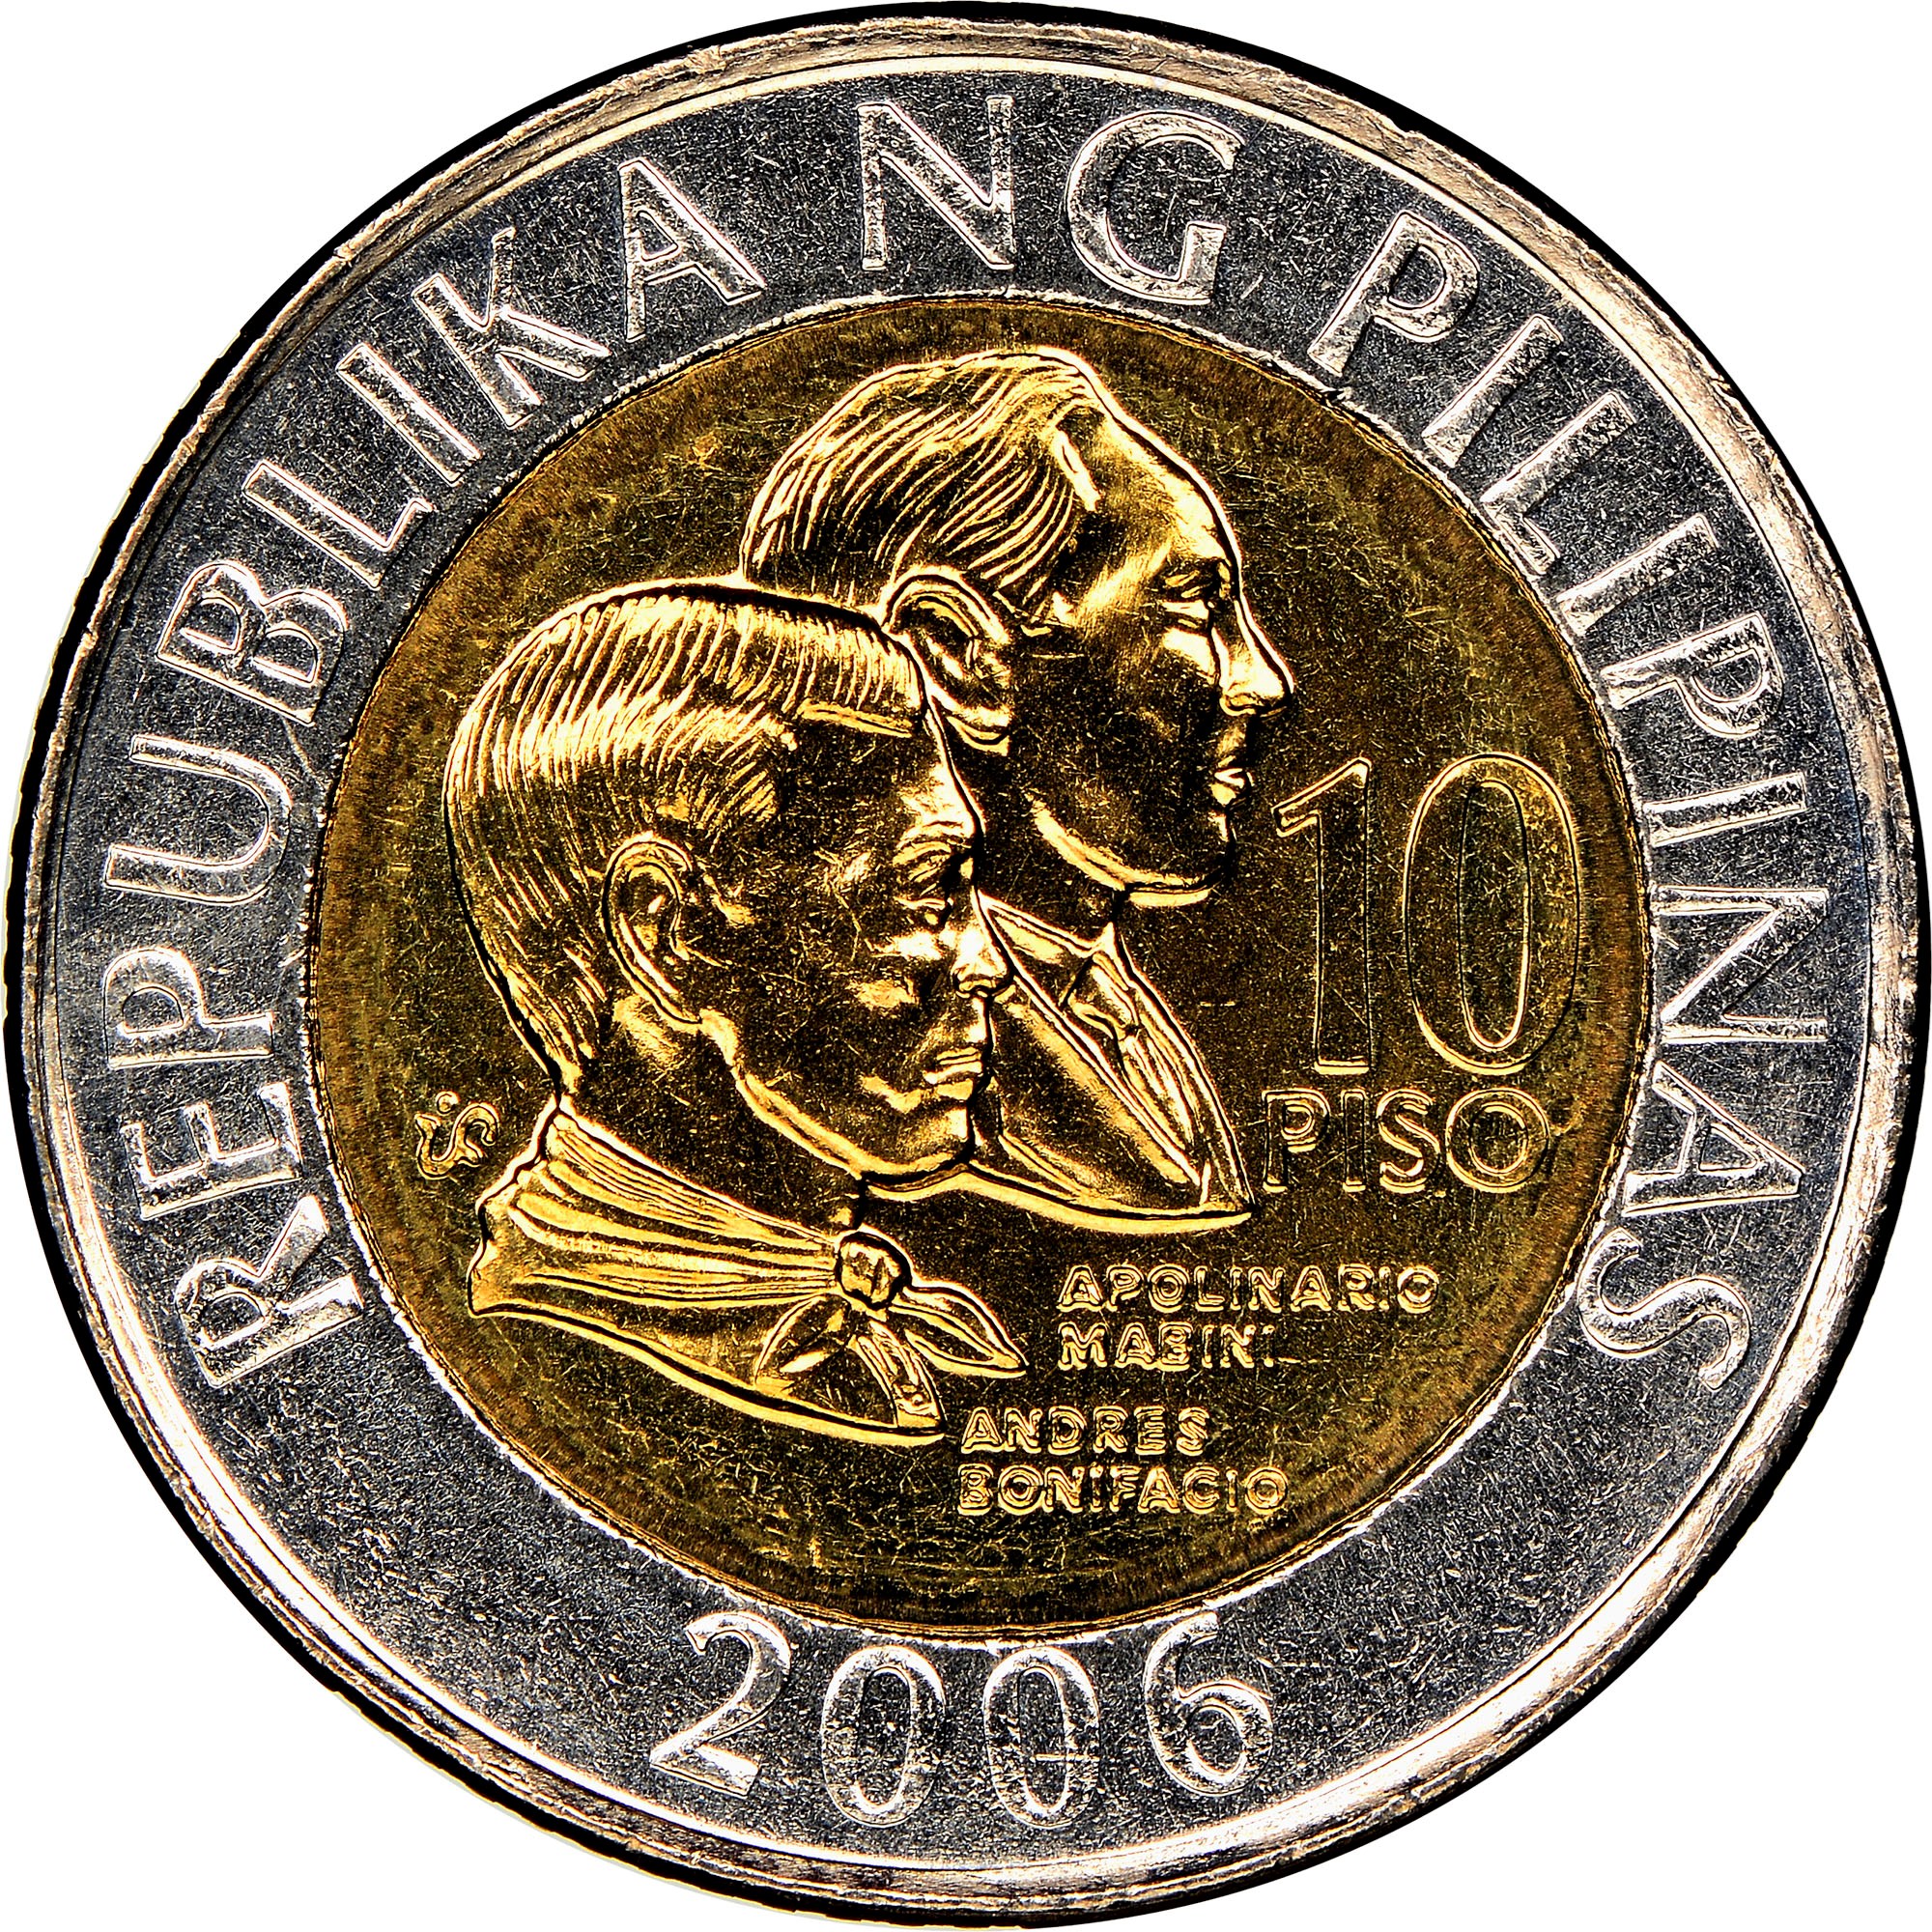 Philippine ten-peso coin - Wikipedia